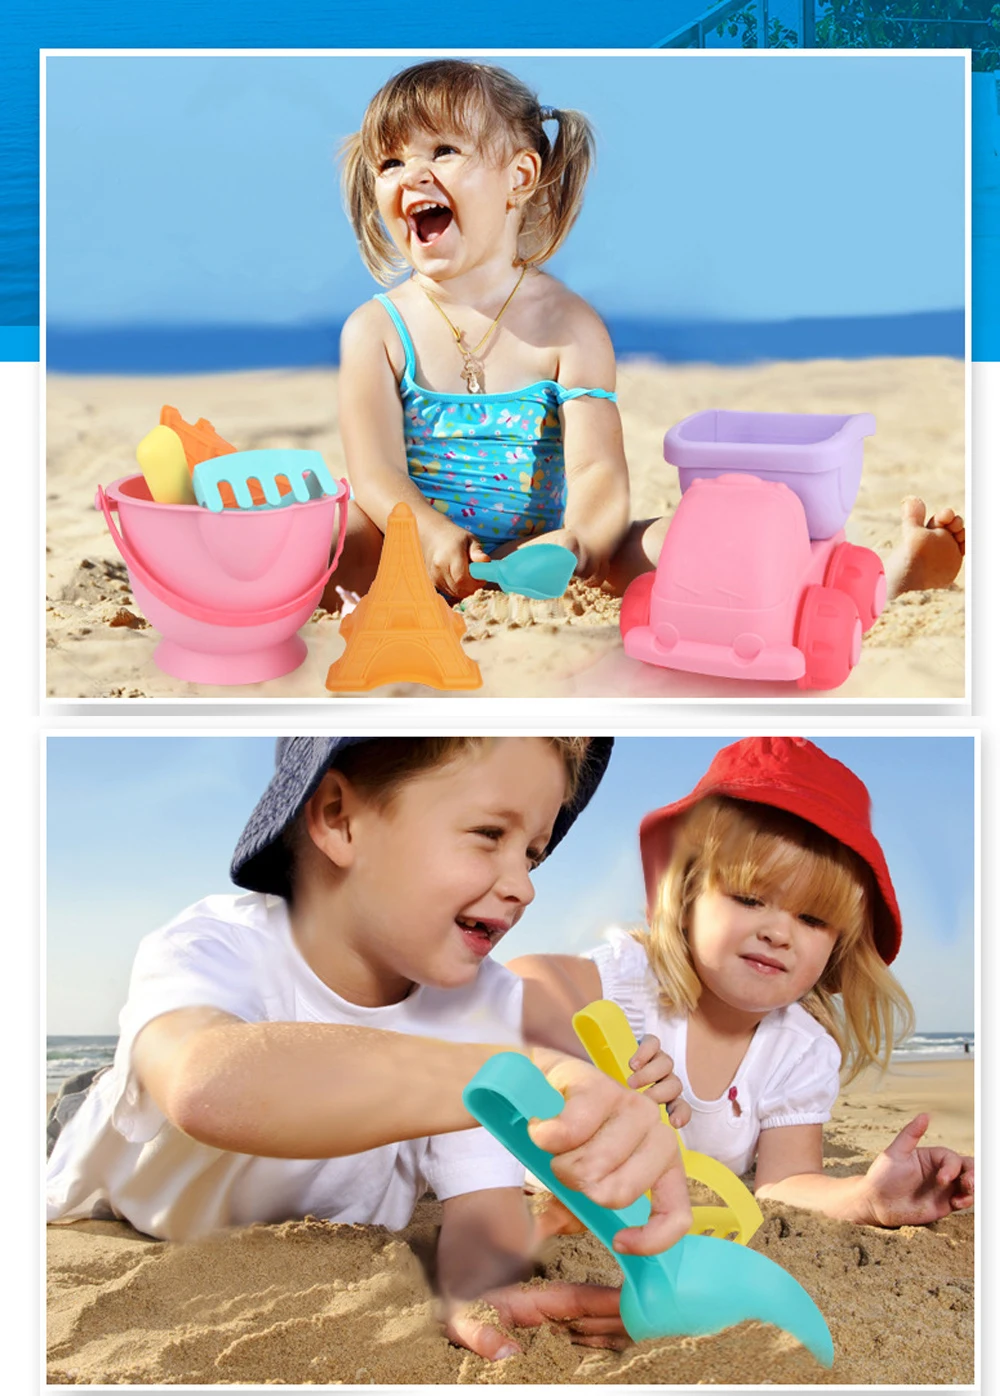 5 шт./компл. детские мягкие пляжные игрушки набор воды песок пляжа Играть Классические игрушки для детей Приморский ведро автомобили лопата